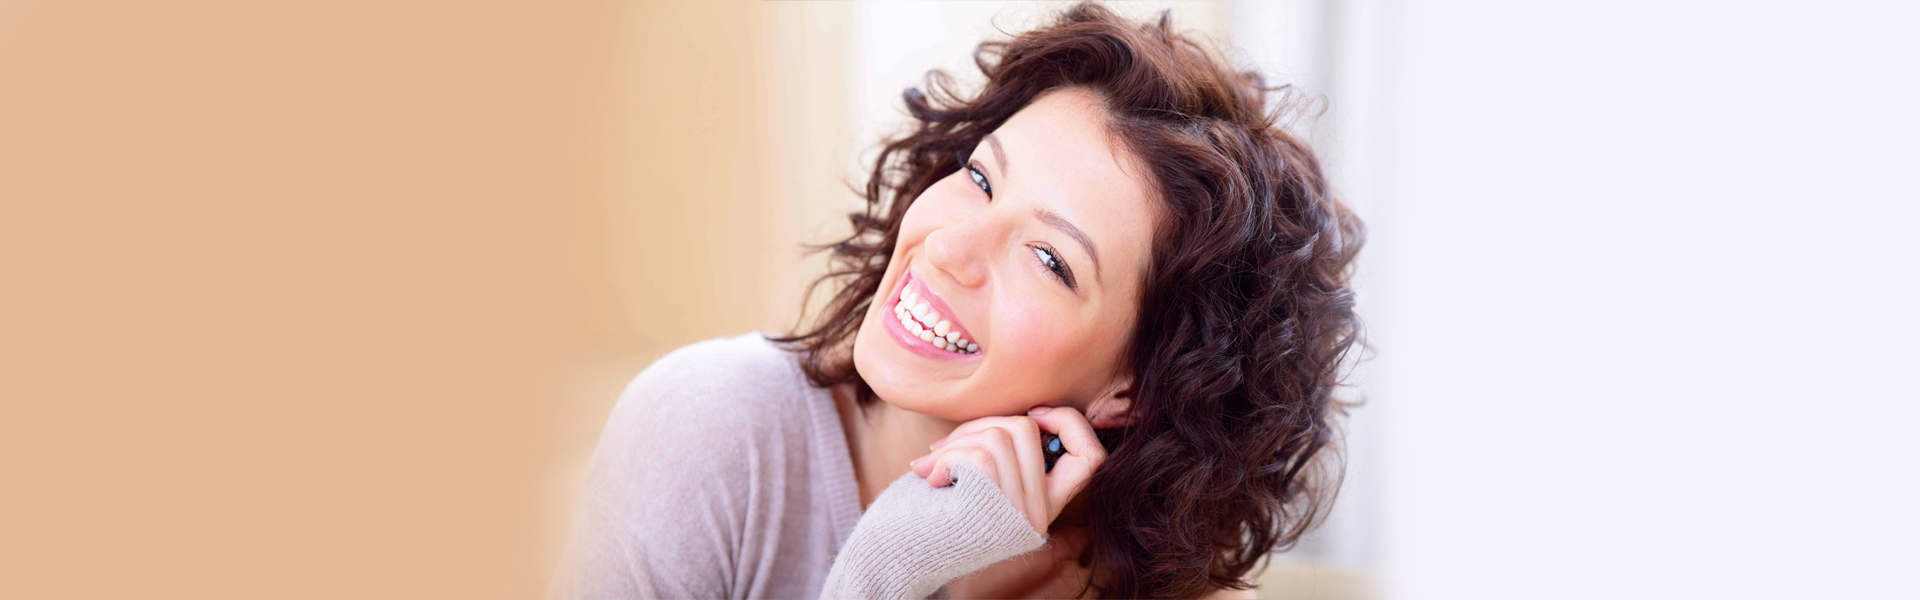 6 Ways Veneers Can Improve Your Smile